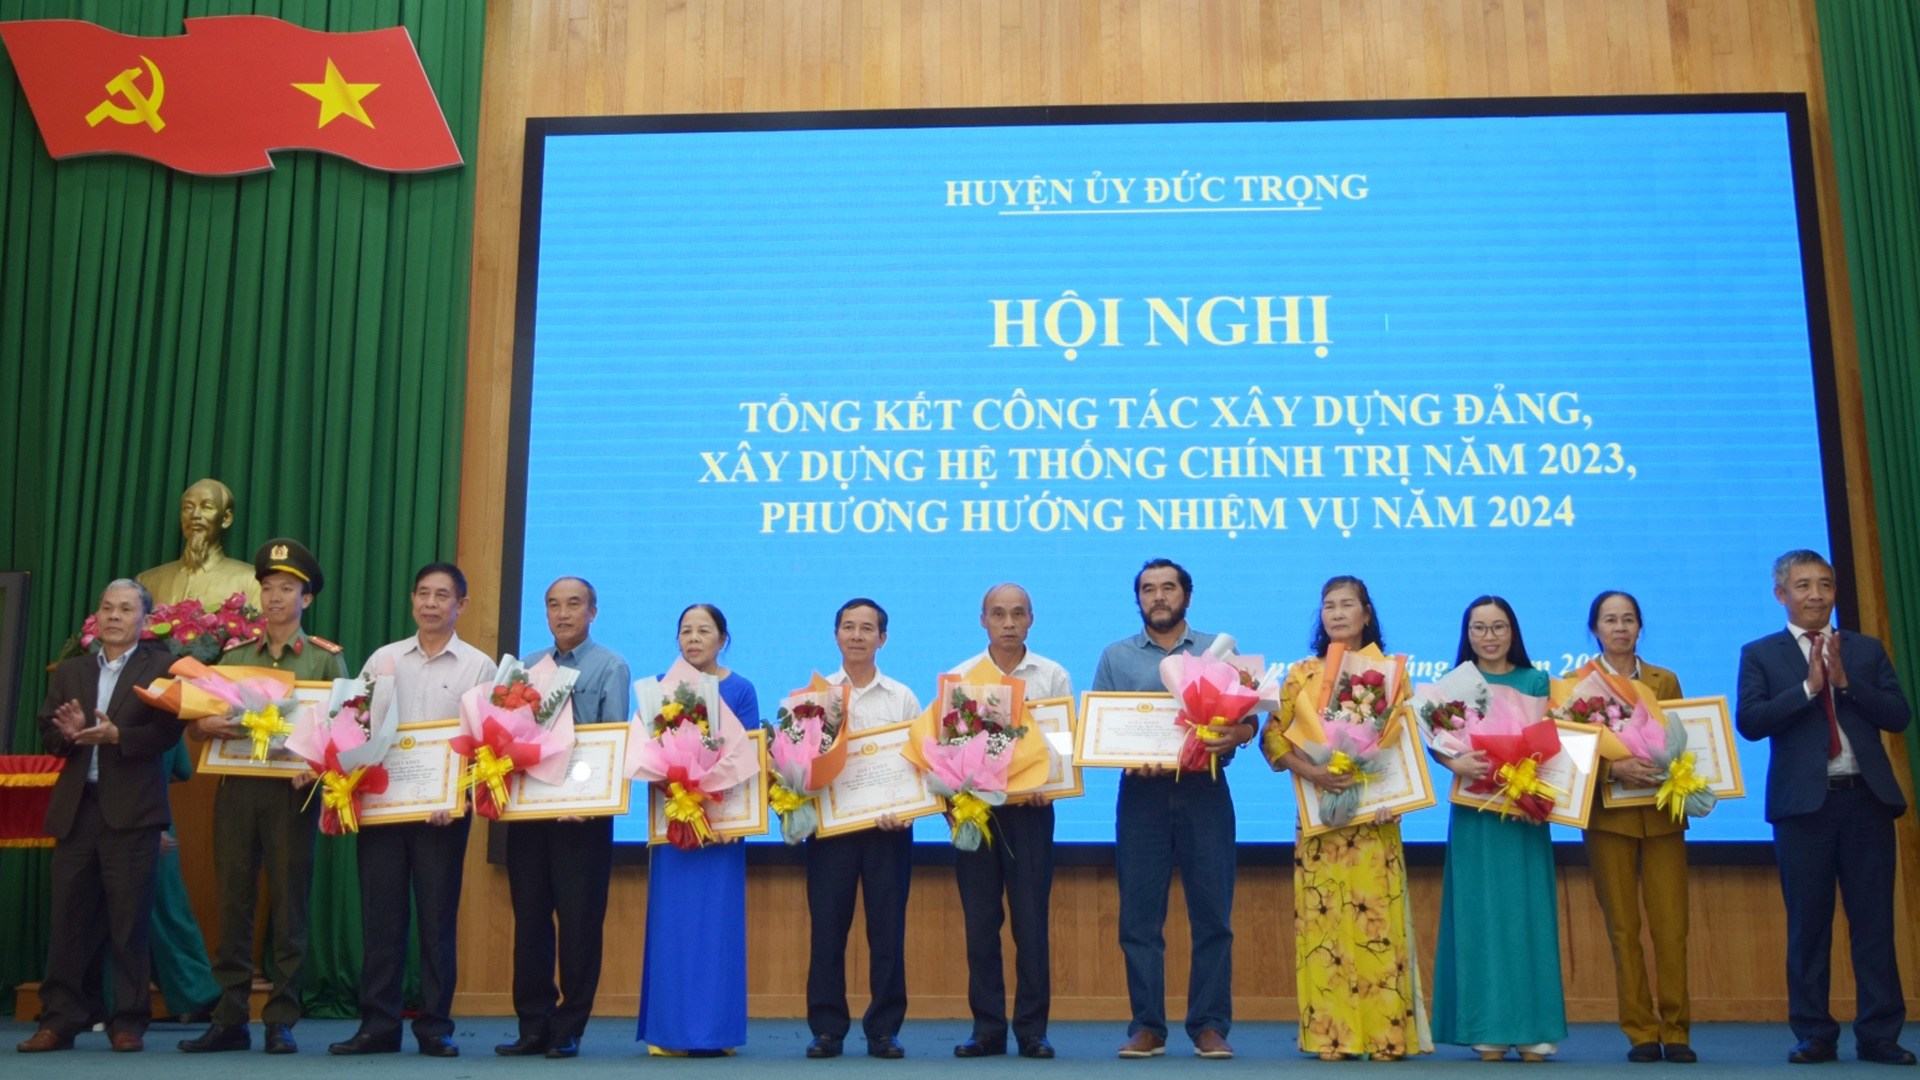 Đồng chí Bùi Sơn Điền - Bí thư Huyện ủy và đồng chí Nguyễn Văn Cường - Chủ tịch UBND huyện Đức trọng trao giấy khen cho các đảng viên xuất sắc